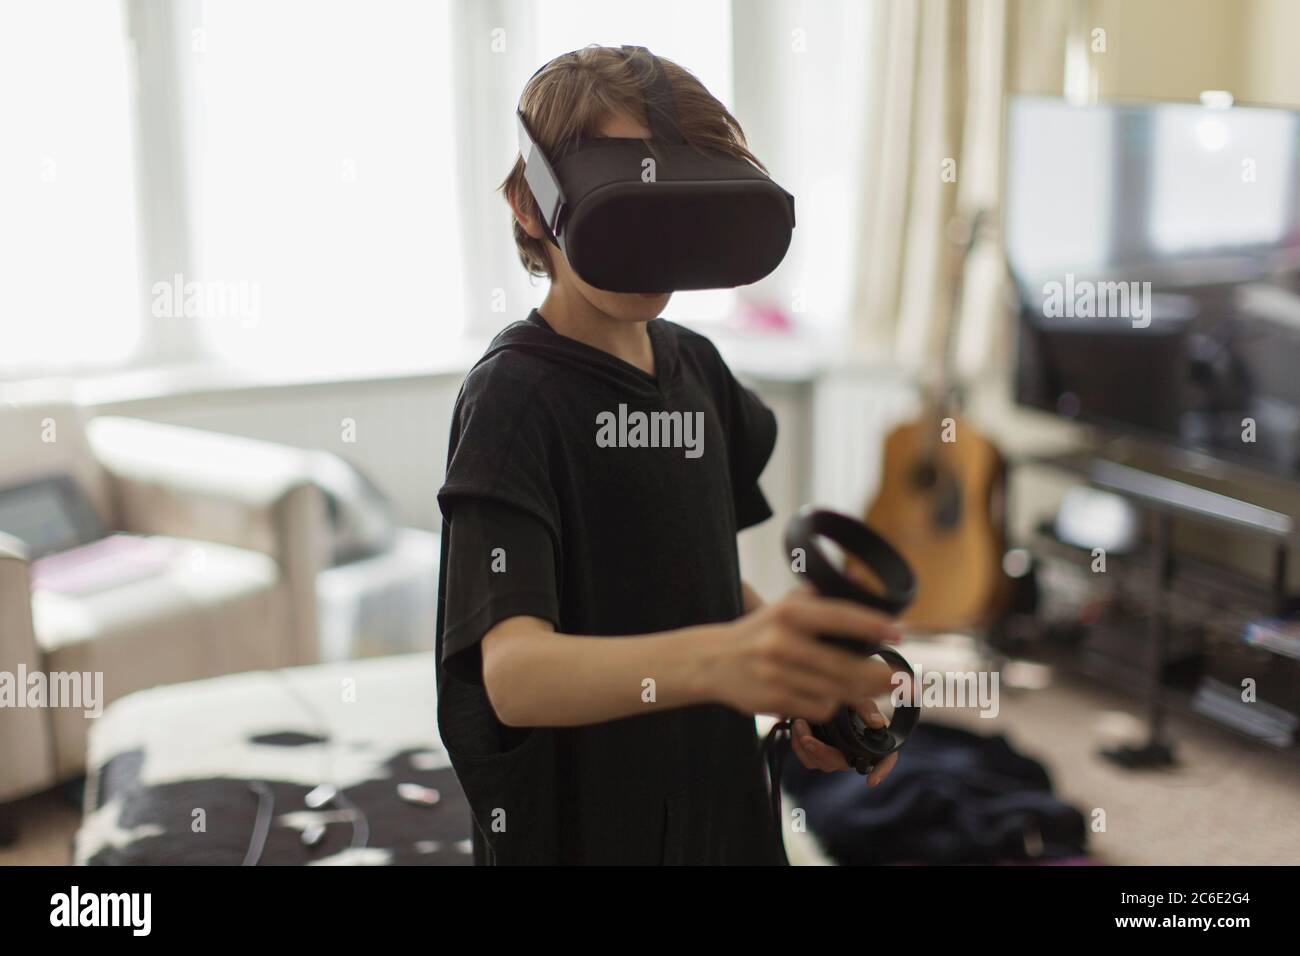 Junge spielt Videospiel mit VRS Brille Stockfoto